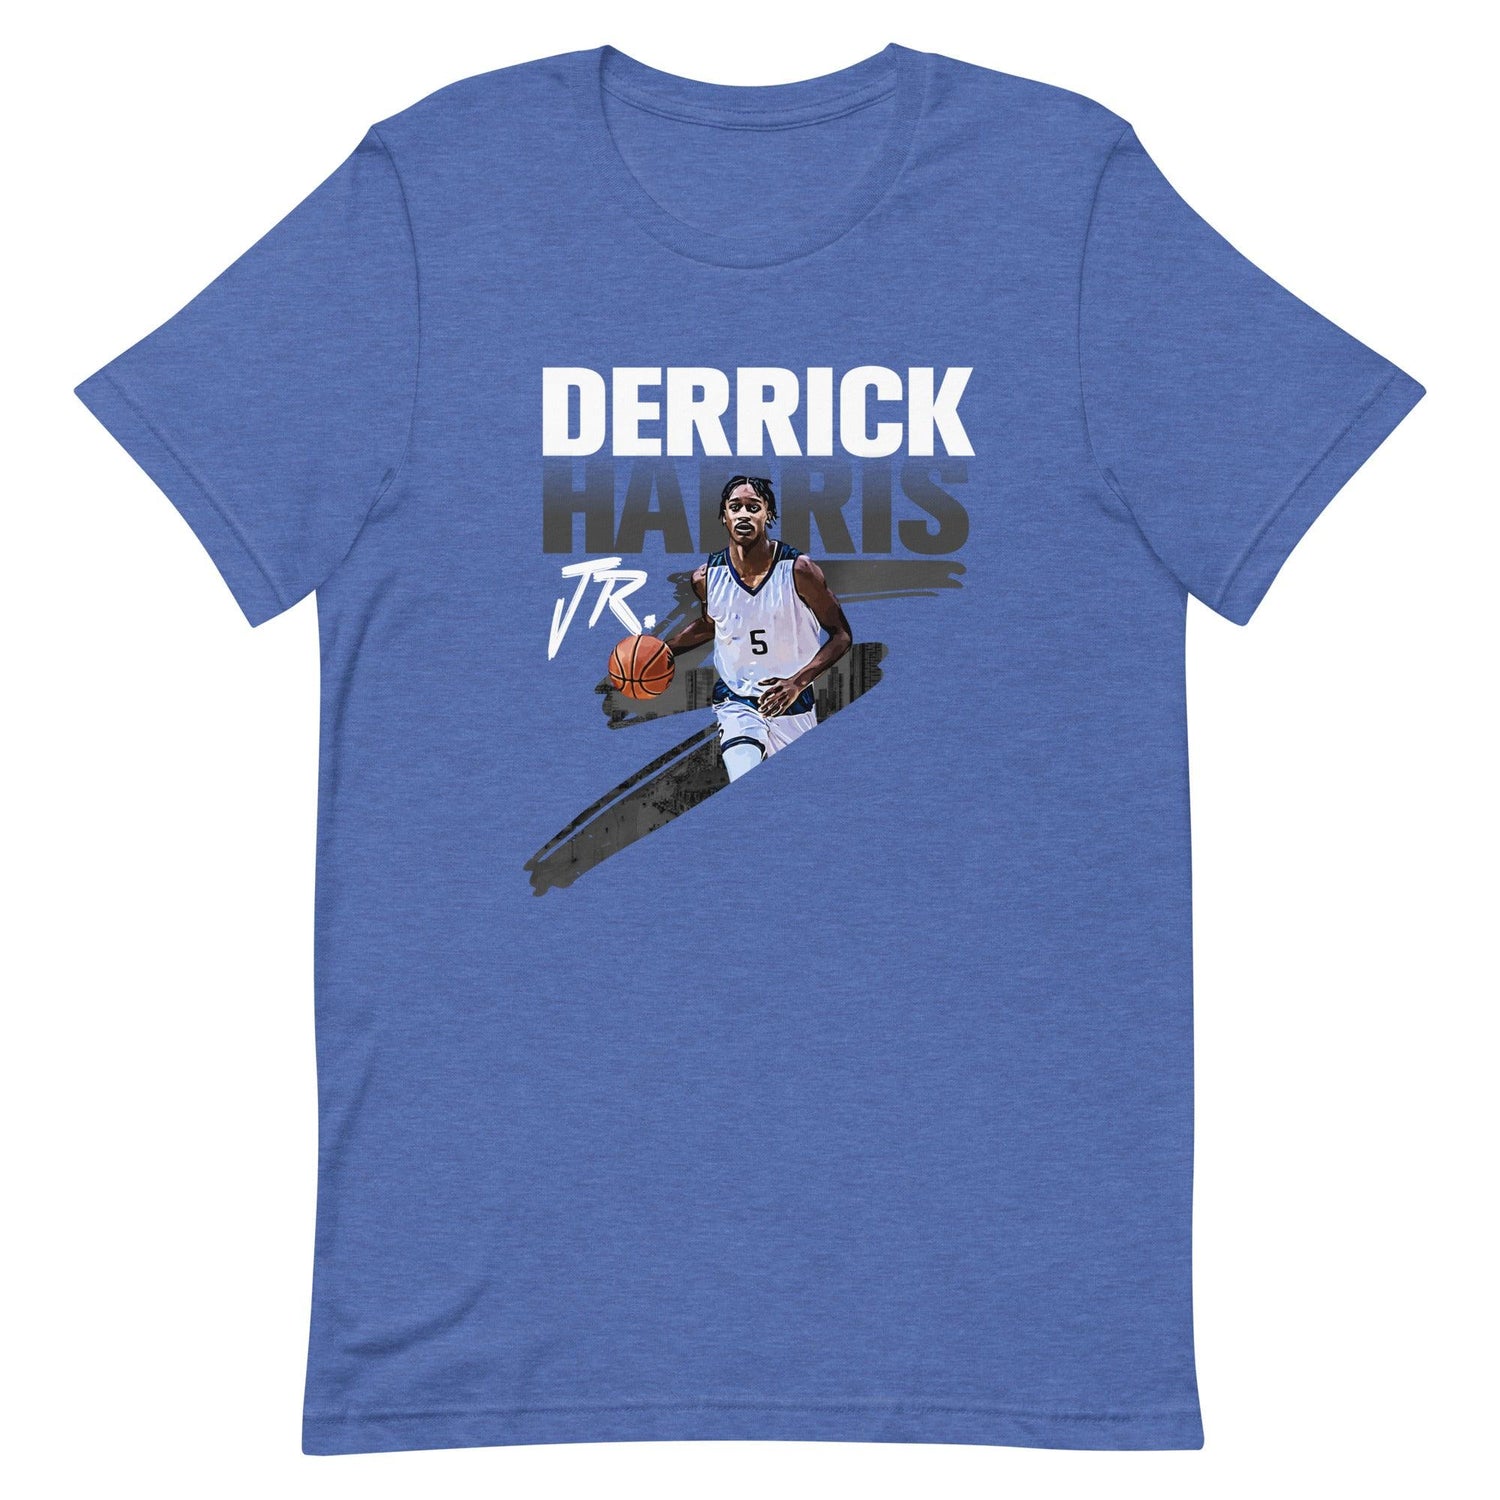 Derrick Harris Jr. "Gameday" t-shirt - Fan Arch